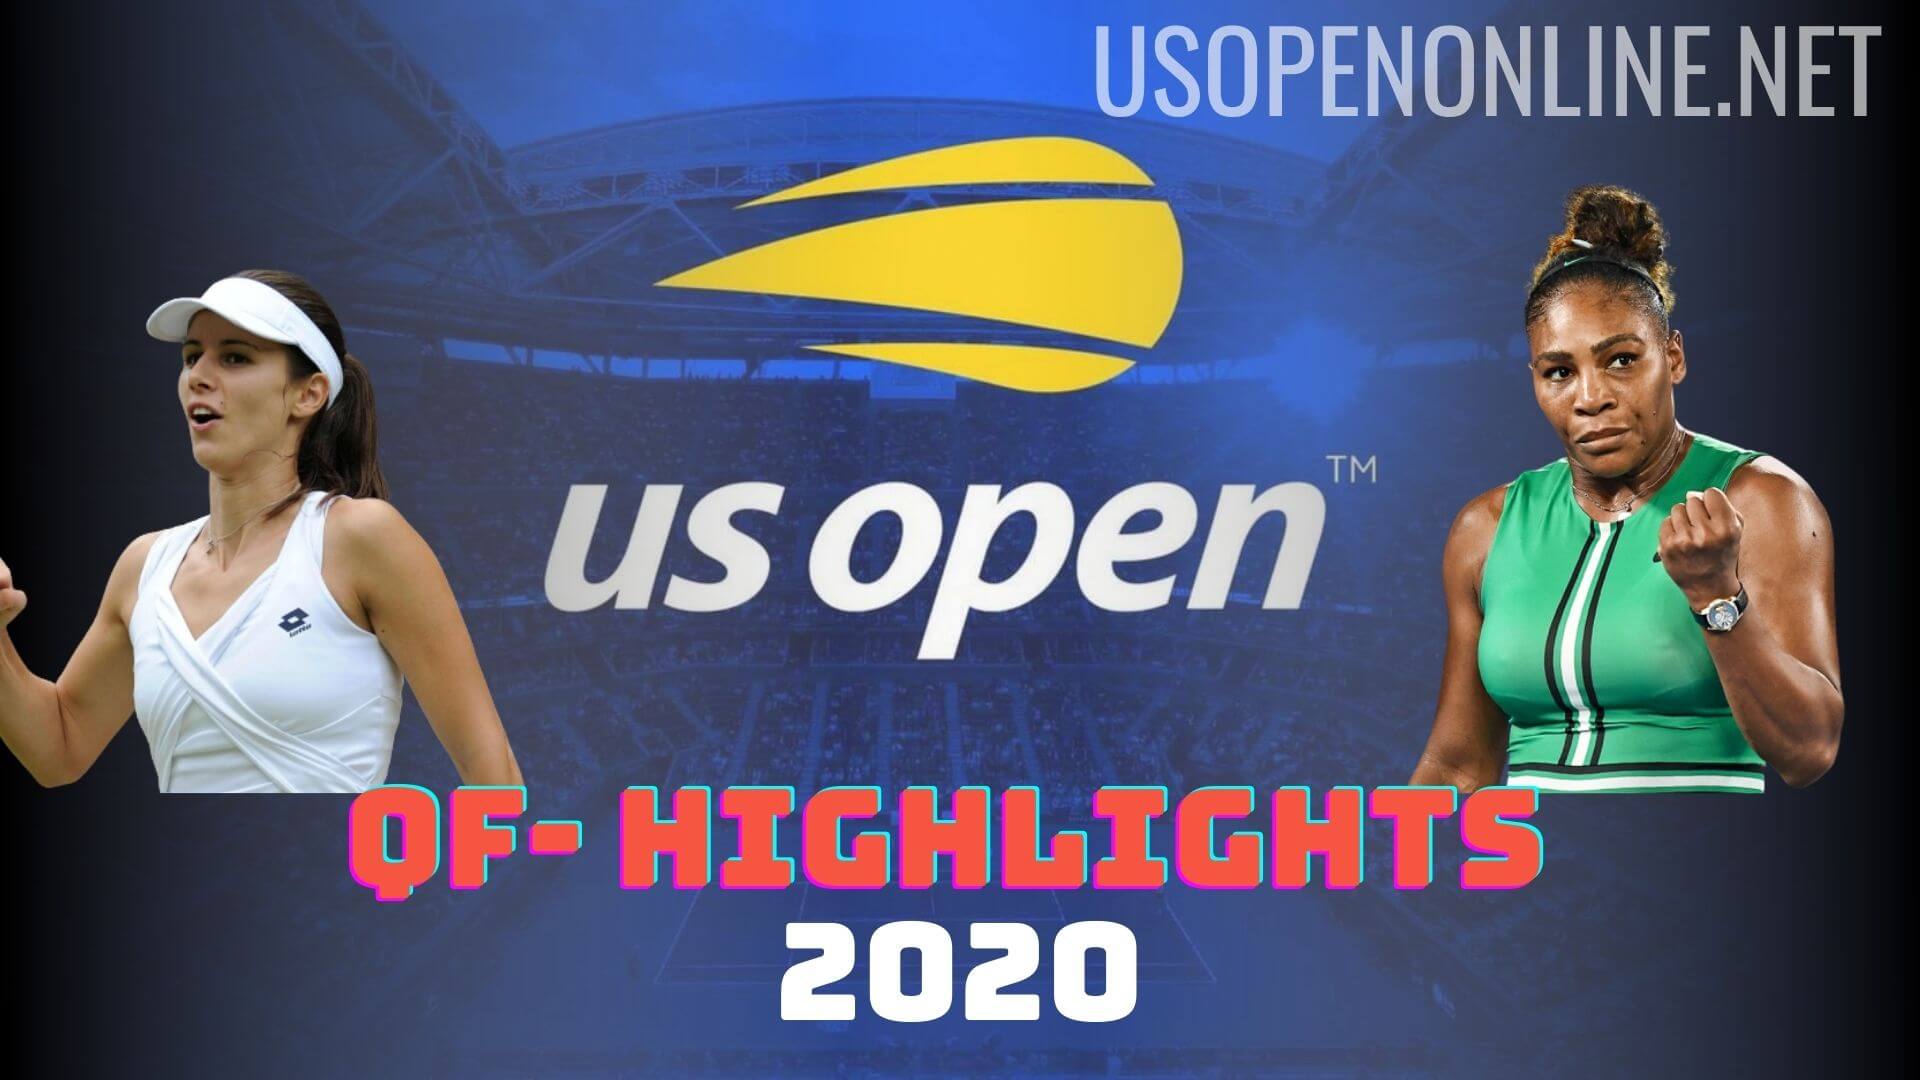  Pironkova Vs Serena Williams QF Highlights US Open 2020